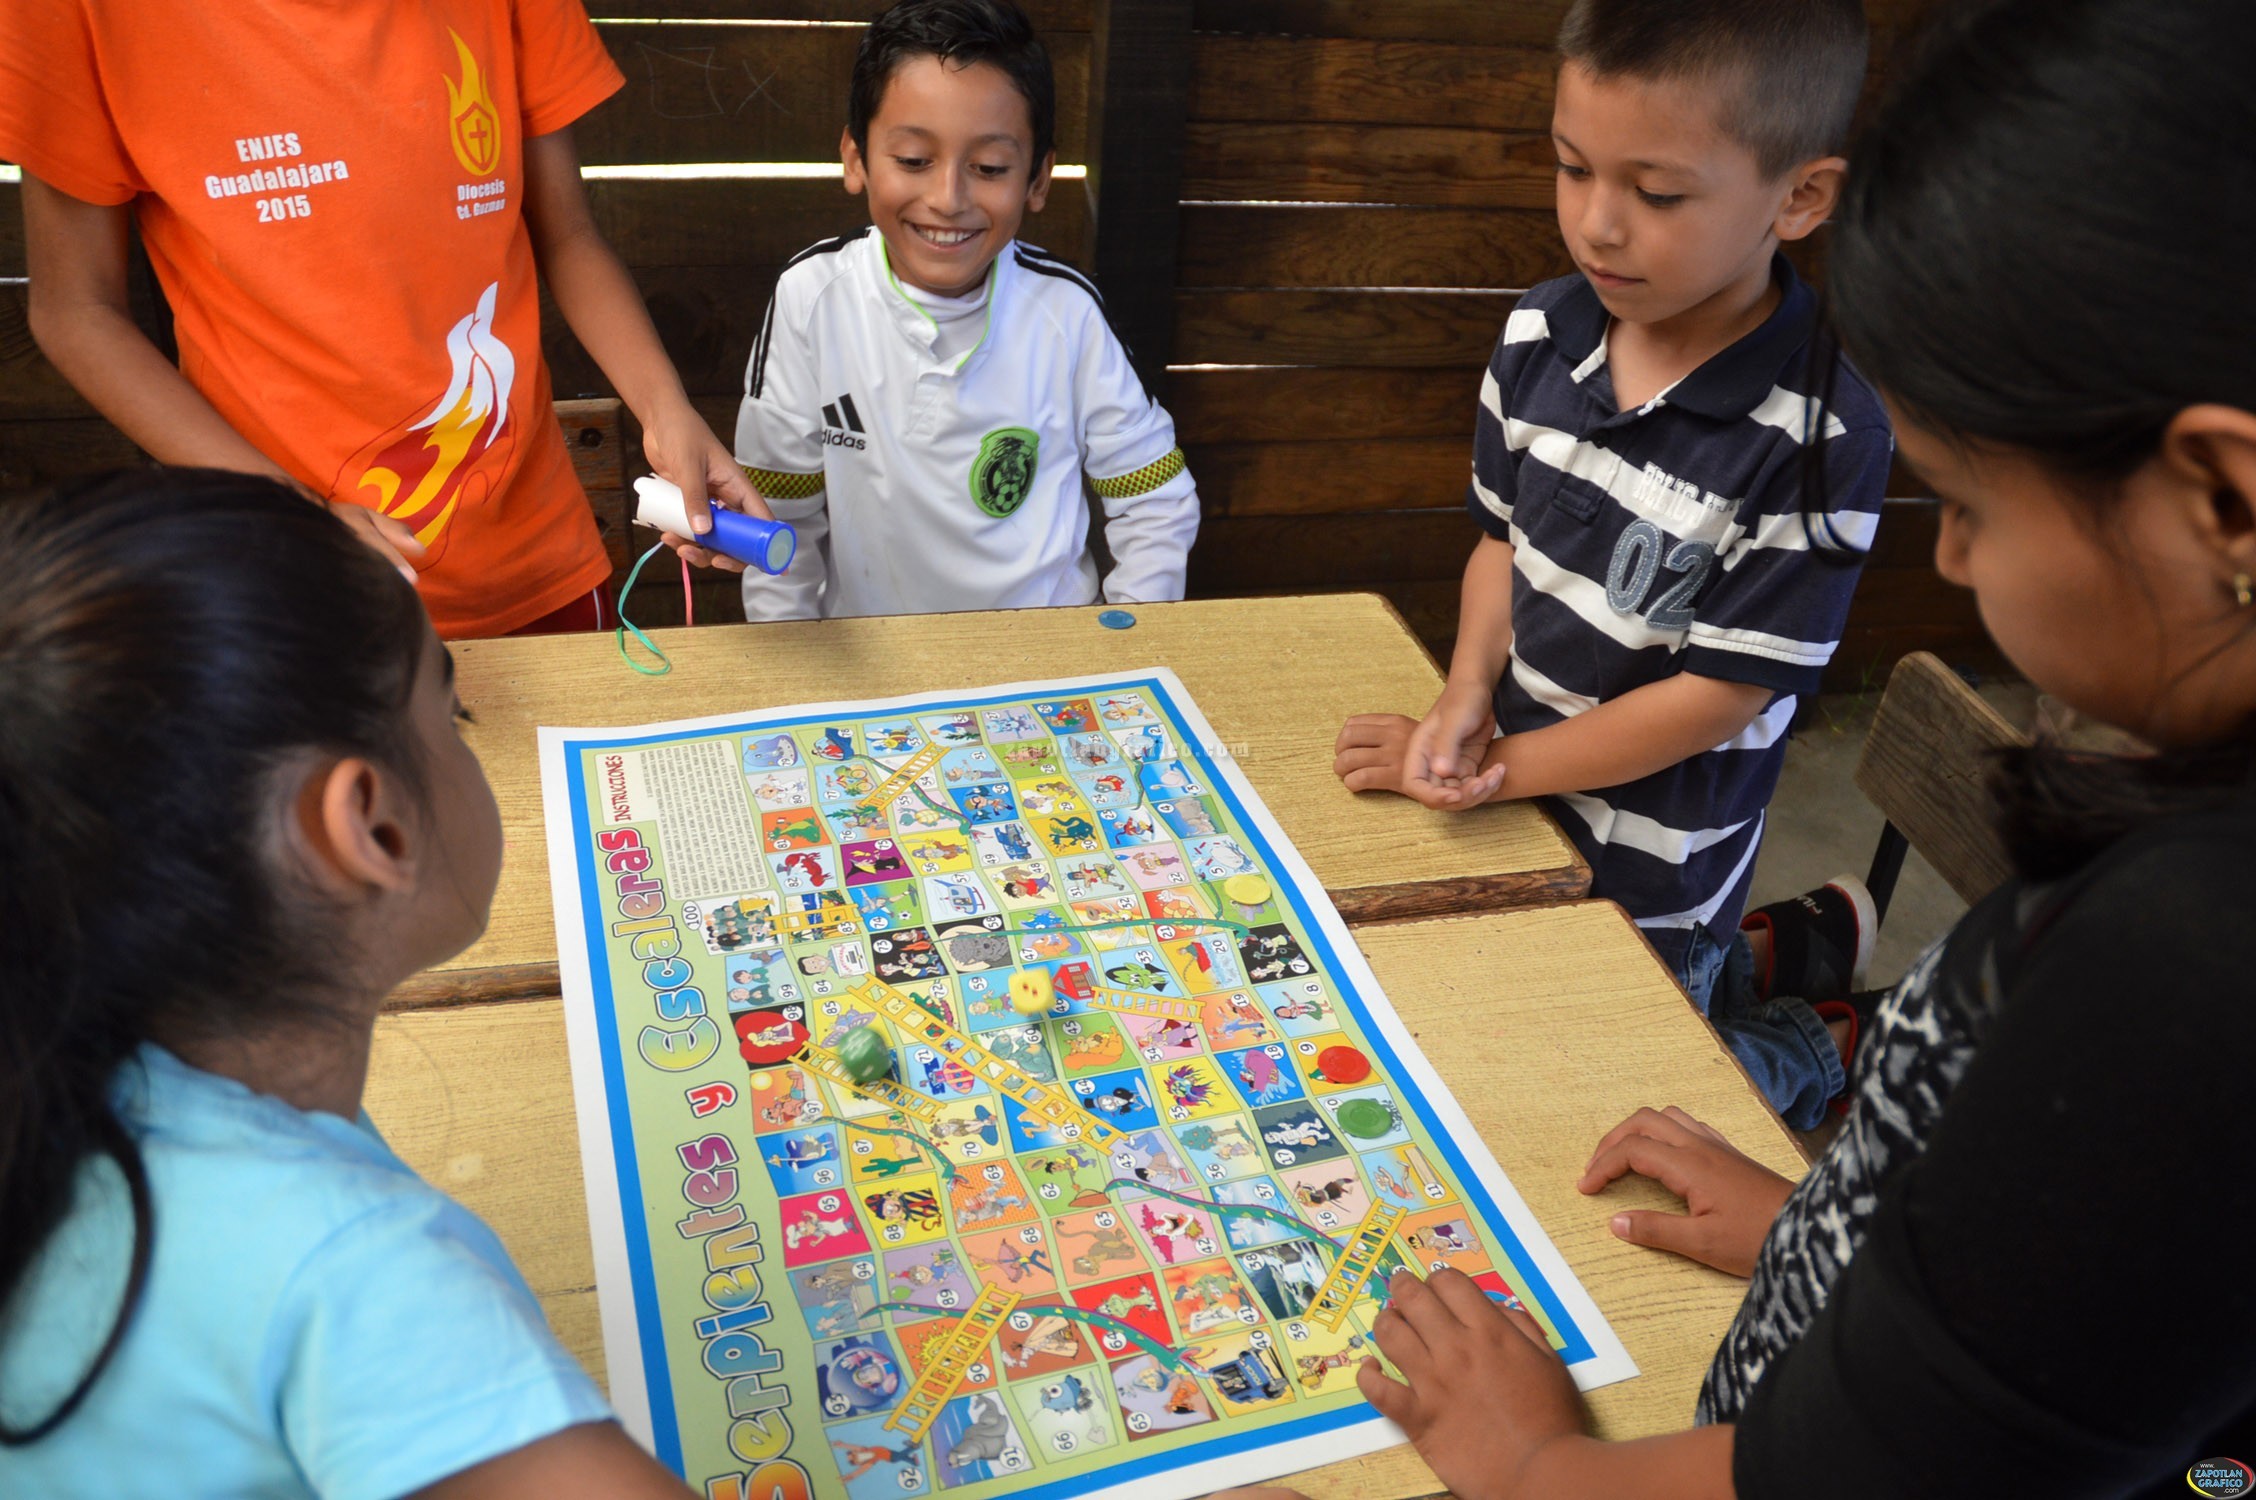 Imparten Cursos de Verano Saludable en colonias de Zapotlán